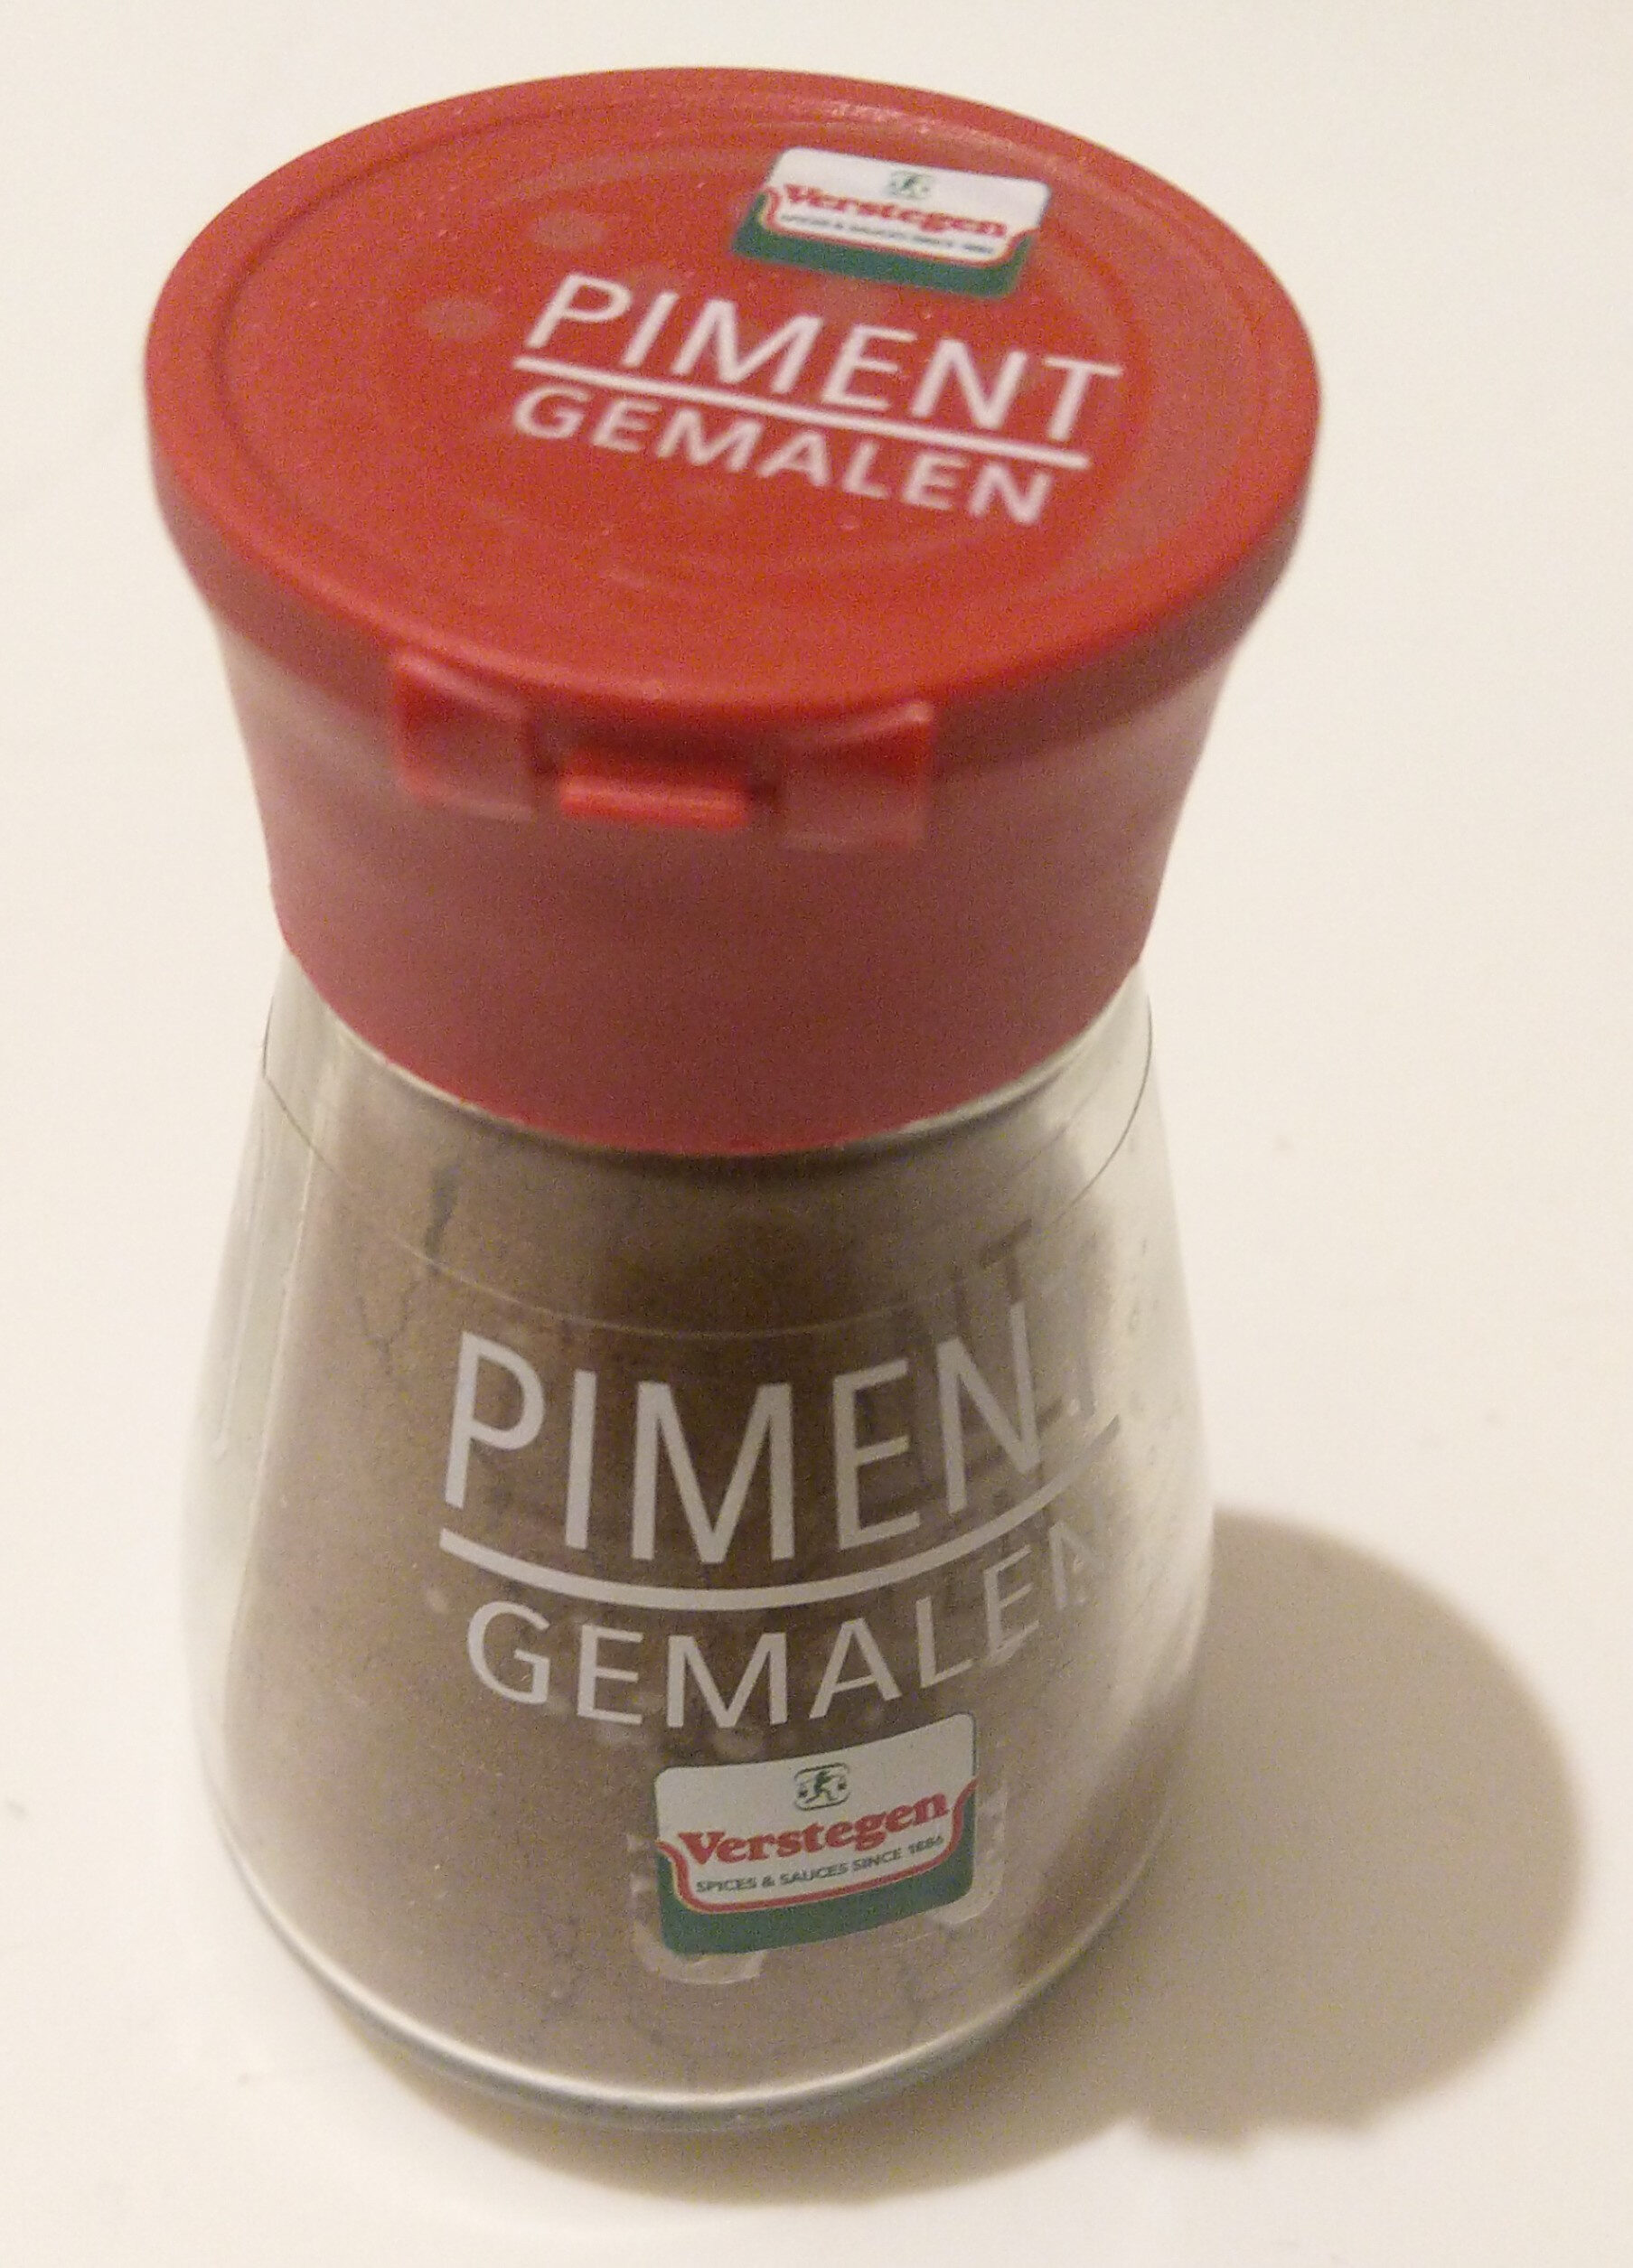 Piment gemalen - Produkt - nl